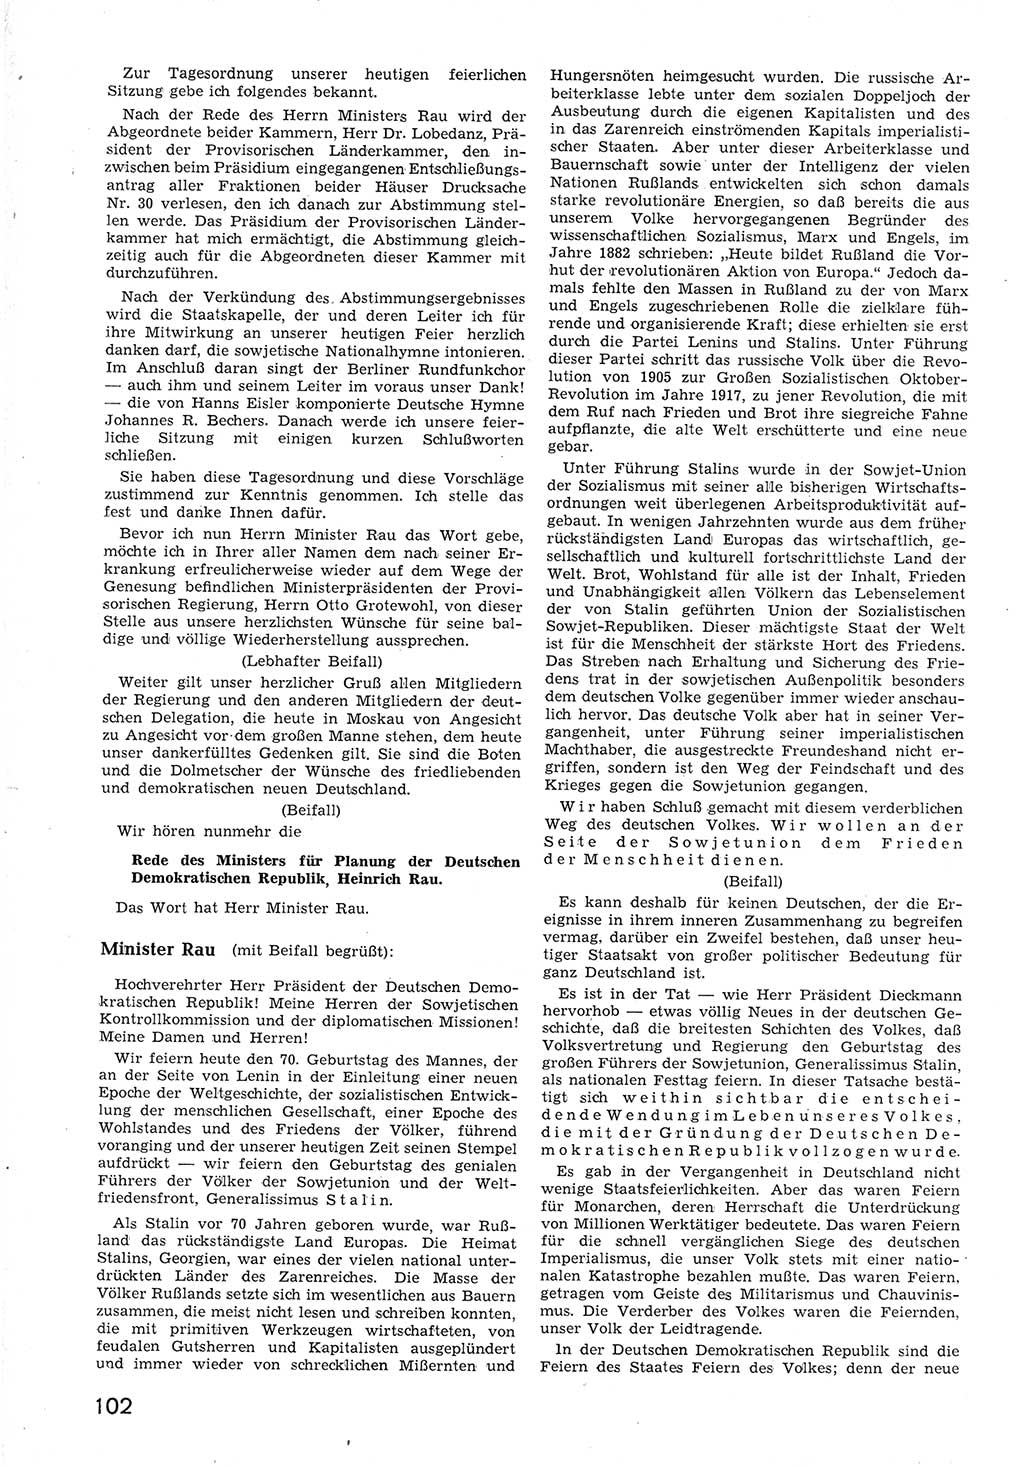 Provisorische Volkskammer (VK) der Deutschen Demokratischen Republik (DDR) 1949-1950, Dokument 114 (Prov. VK DDR 1949-1950, Dok. 114)